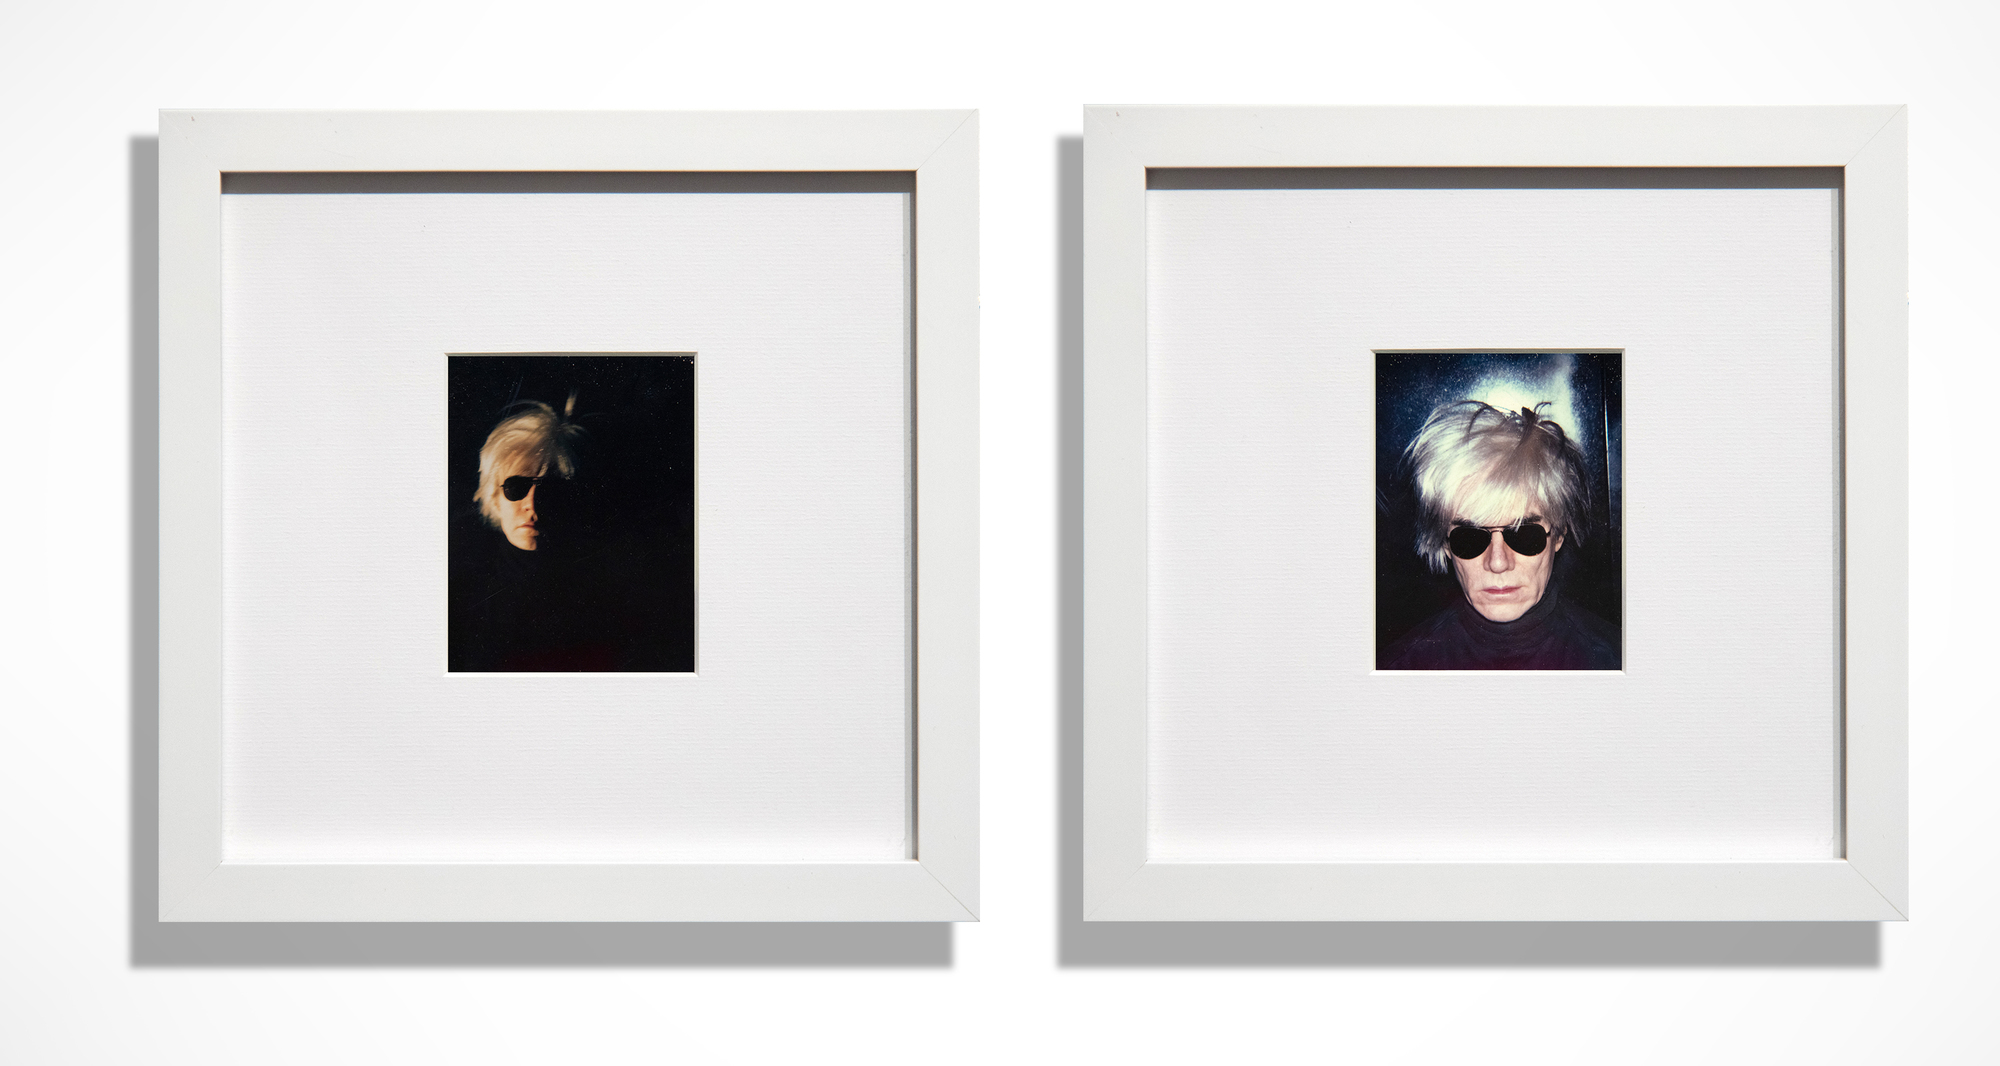 Empezando en 1963, con una serigrafía derivada de una tira de fotomatón, Warhol exploró repetidamente su parecido, culminando con la icónica imagen &quot;Peluca de miedo&quot;. Esencial para su representación de celebridades y su autorrepresentación, la fotografía Polaroid desempeñó un papel crucial en su obra y en nuestra percepción de su enorme contribución al arte de posguerra en Estados Unidos. Las dos imágenes presentadas, oscuras y espeluznantes, son retratos bellamente elaborados y bien montados. Envuelto en un ambiente tenebroso que destripa su cuerpo, estos autorretratos muestran a Andy ataviado con su icónica peluca y unas oscuras gafas de sol de aviador, sobre un fondo tan profundamente ensombrecido que su cabeza parece flotar en un vacío de oscuridad. A Warhol le encantaban los juegos de rol, ¡y aquí los tiene a raudales!